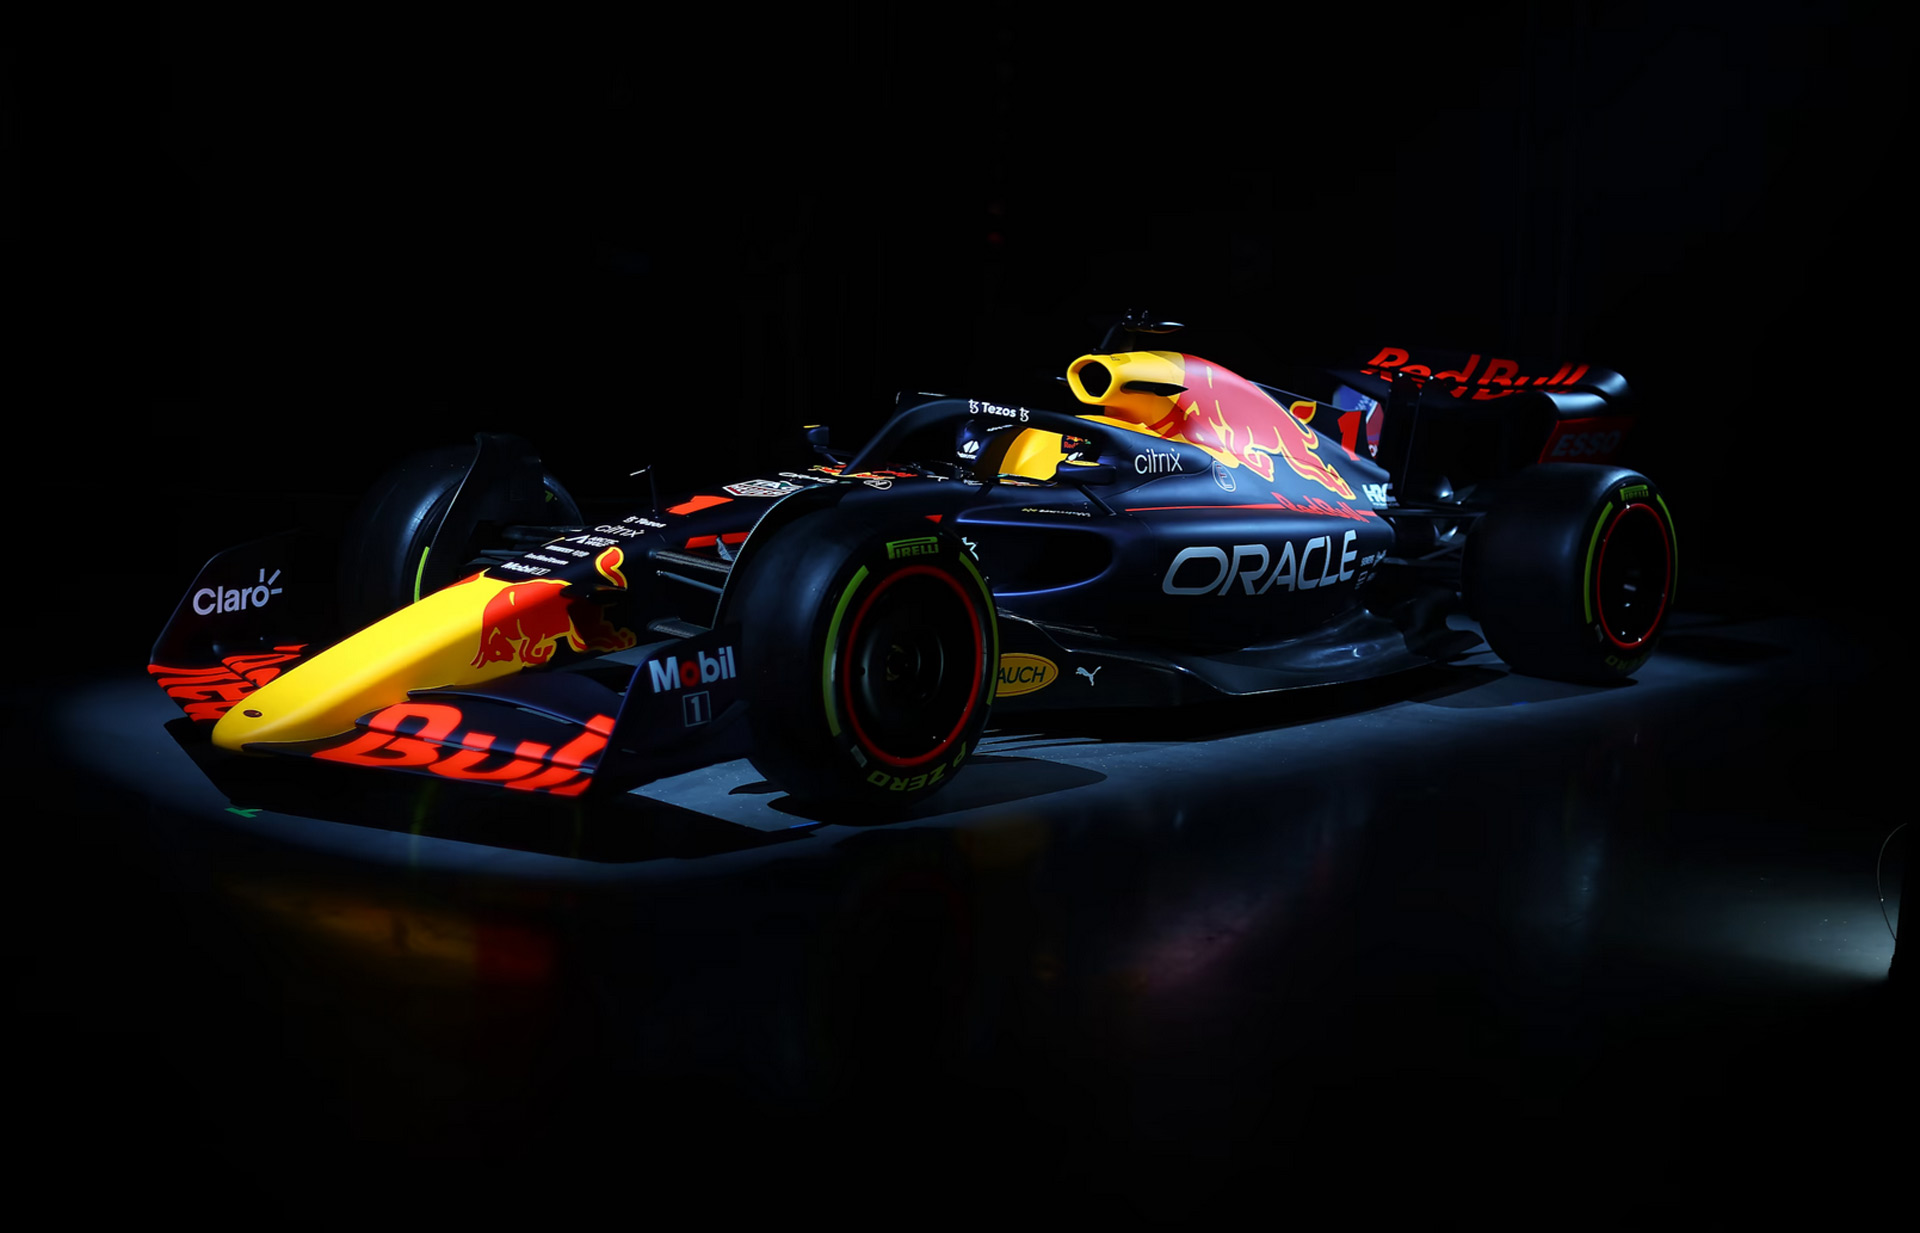 280 Red Bull Racing ideas  red bull racing, racing, formula 1